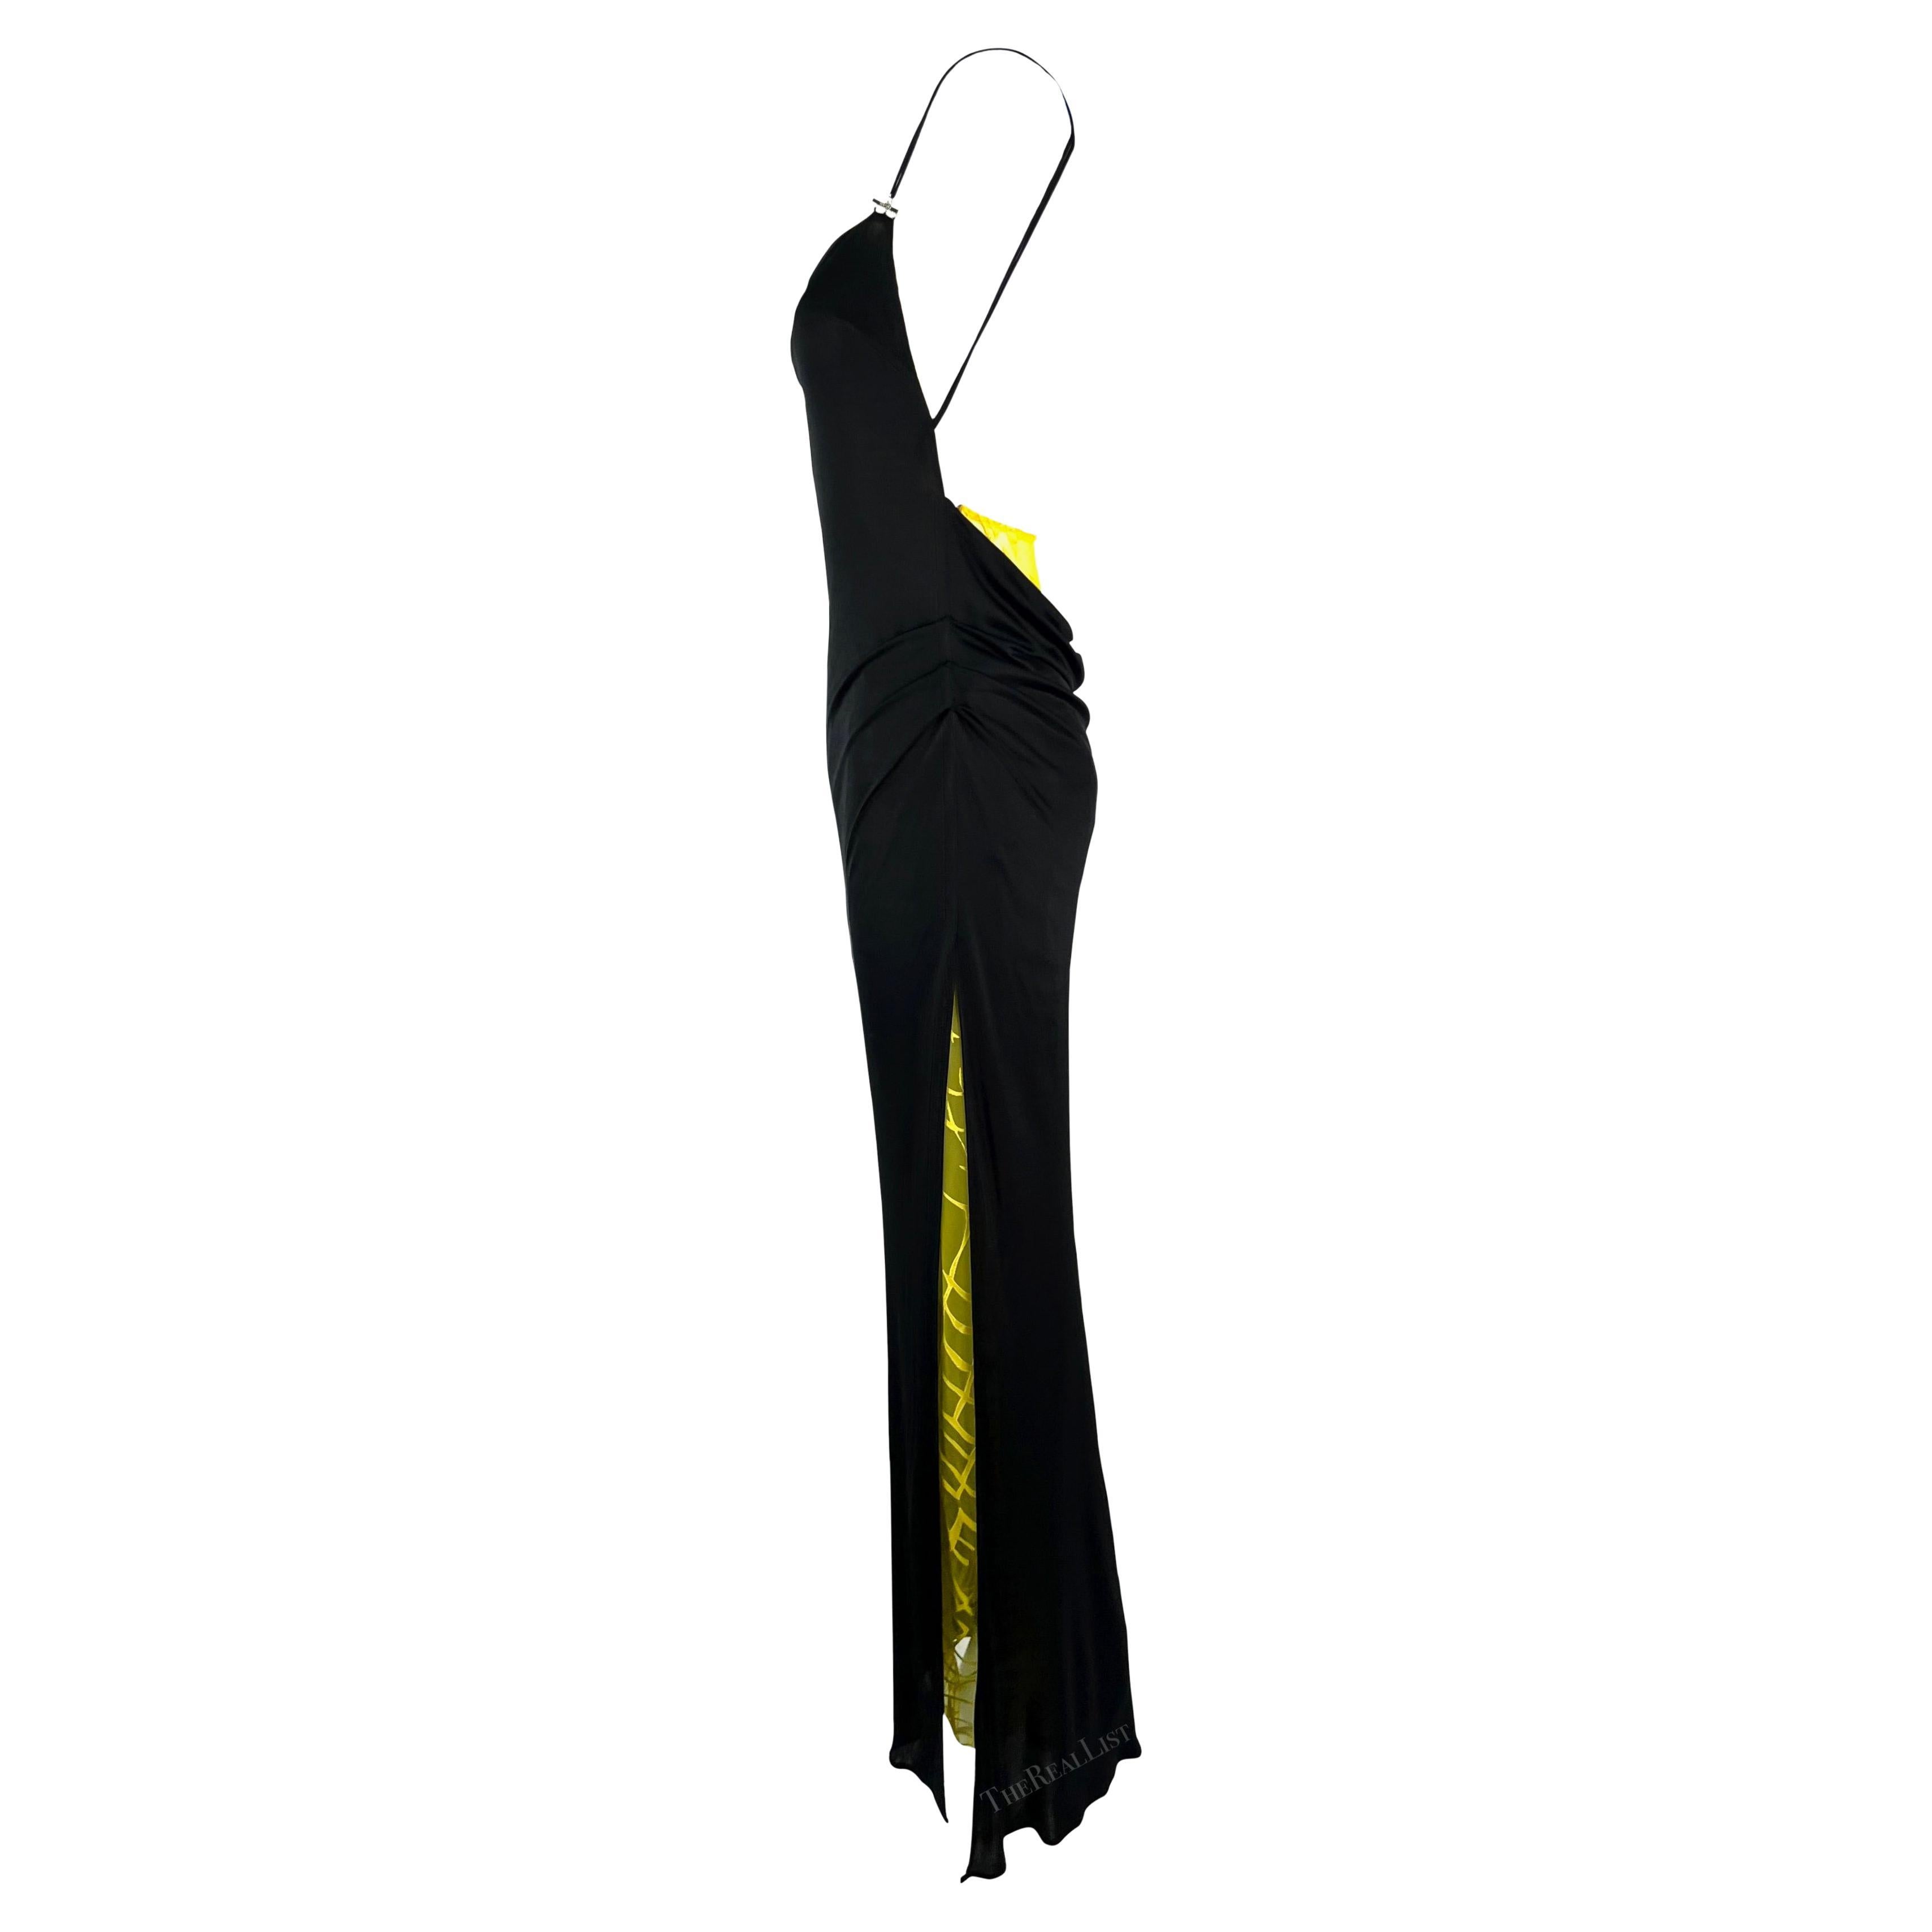 Collectional présente une fabuleuse robe noire de Gianni Versace, dessinée par Donatella Versace pour la collection printemps/été 1999. Cette robe présente des bretelles spaghetti ornées de ferrures métalliques et un dos découvert. Dans le dos, une